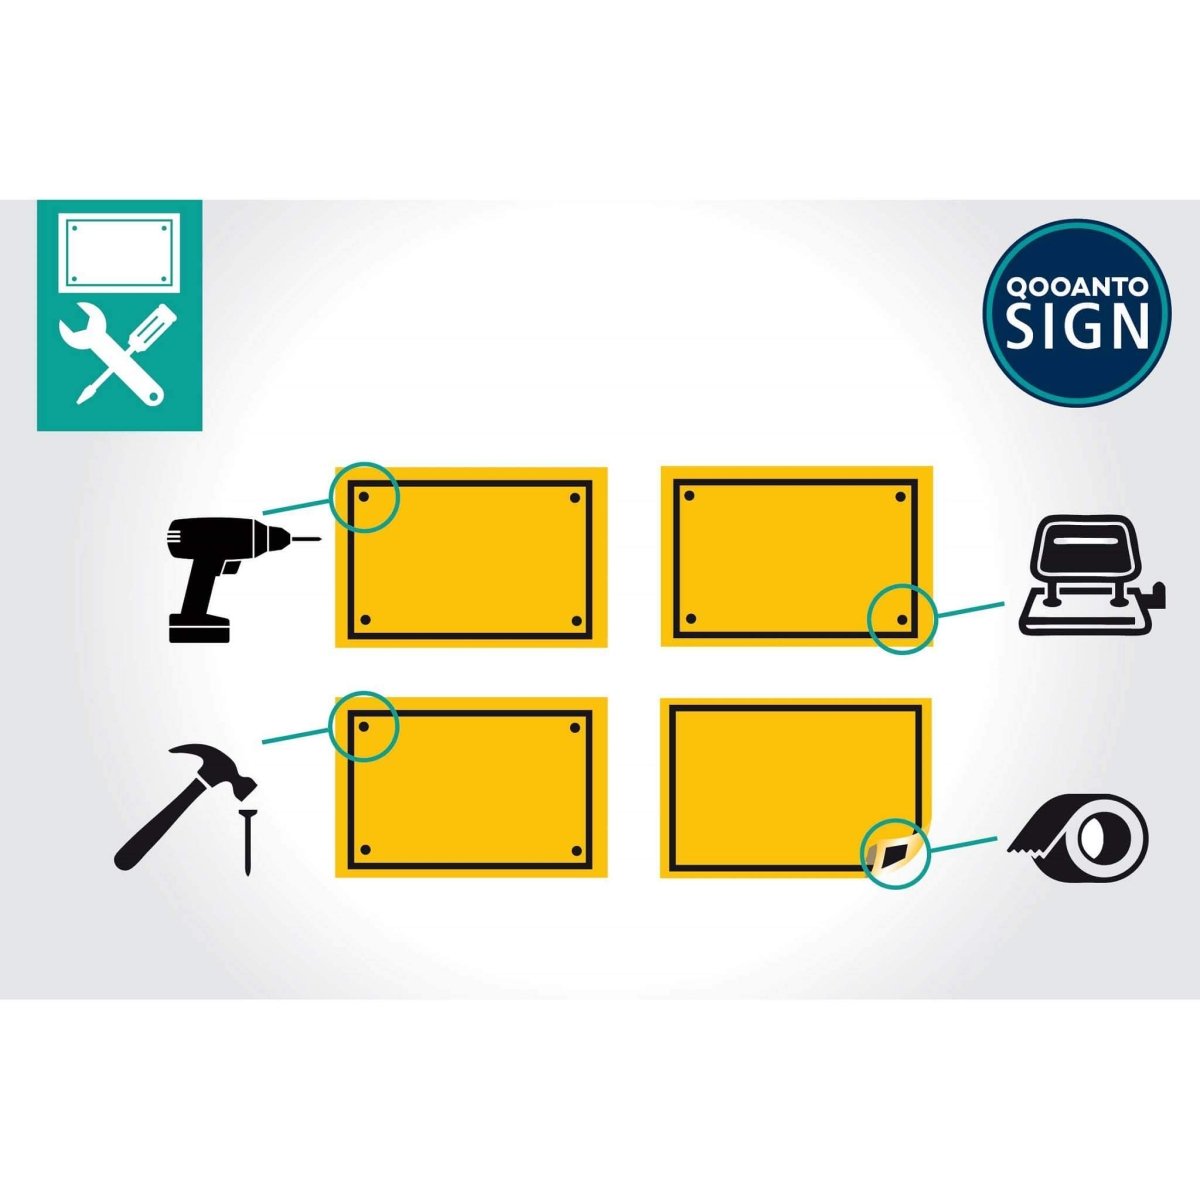 Privatweg Benutzung Verboten Schild oder Aufkleber aus Alu-Verbund oder Selbstklebefolie mit UV-Schutz - QOOANTO-SIGN